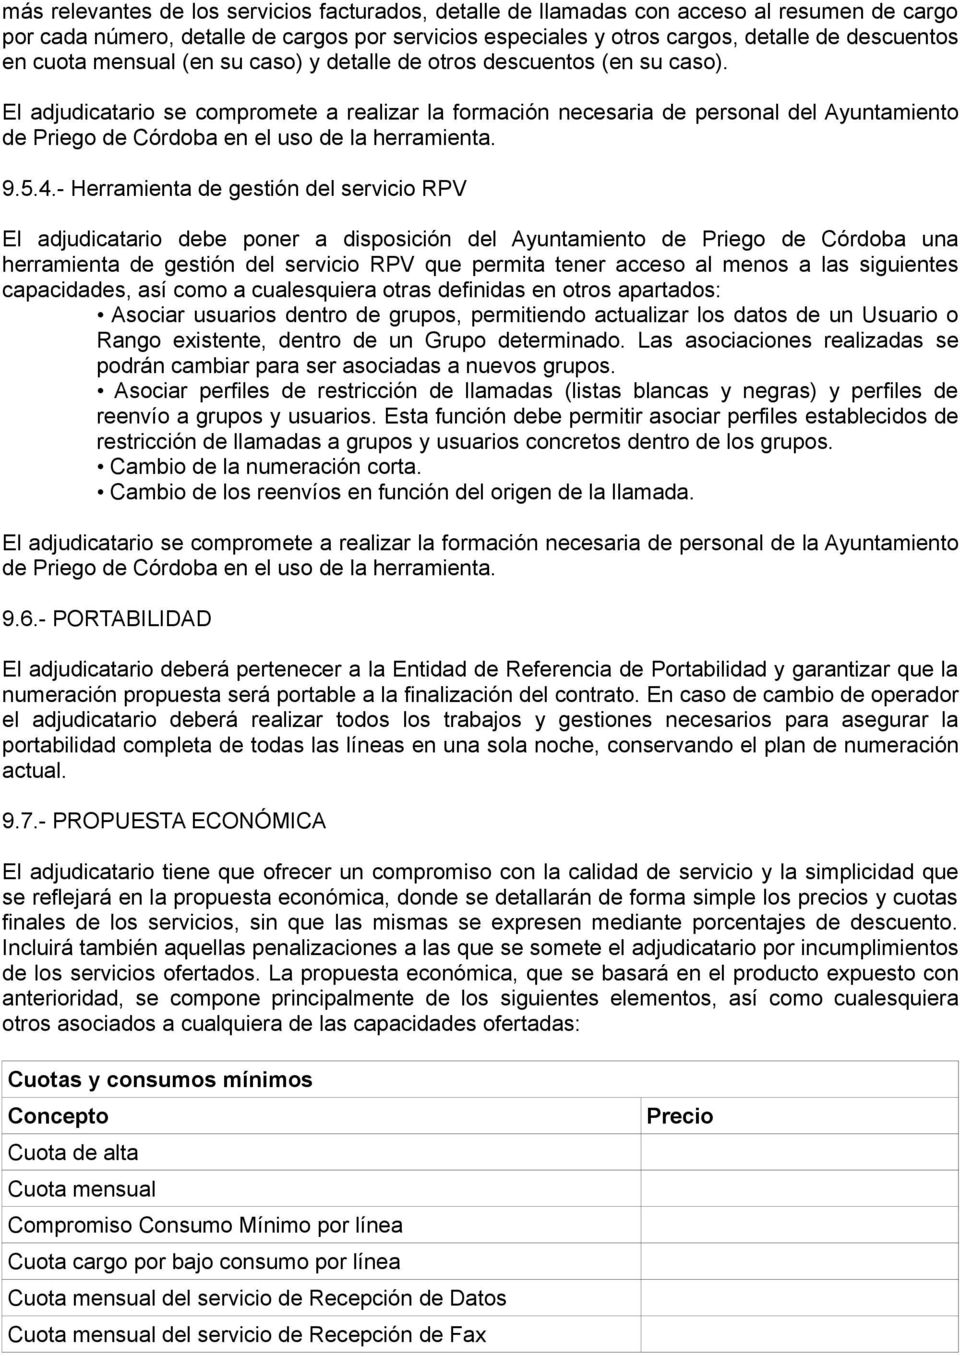 El adjudicatario se compromete a realizar la formación necesaria de personal del Ayuntamiento de Priego de Córdoba en el uso de la herramienta. 9.5.4.